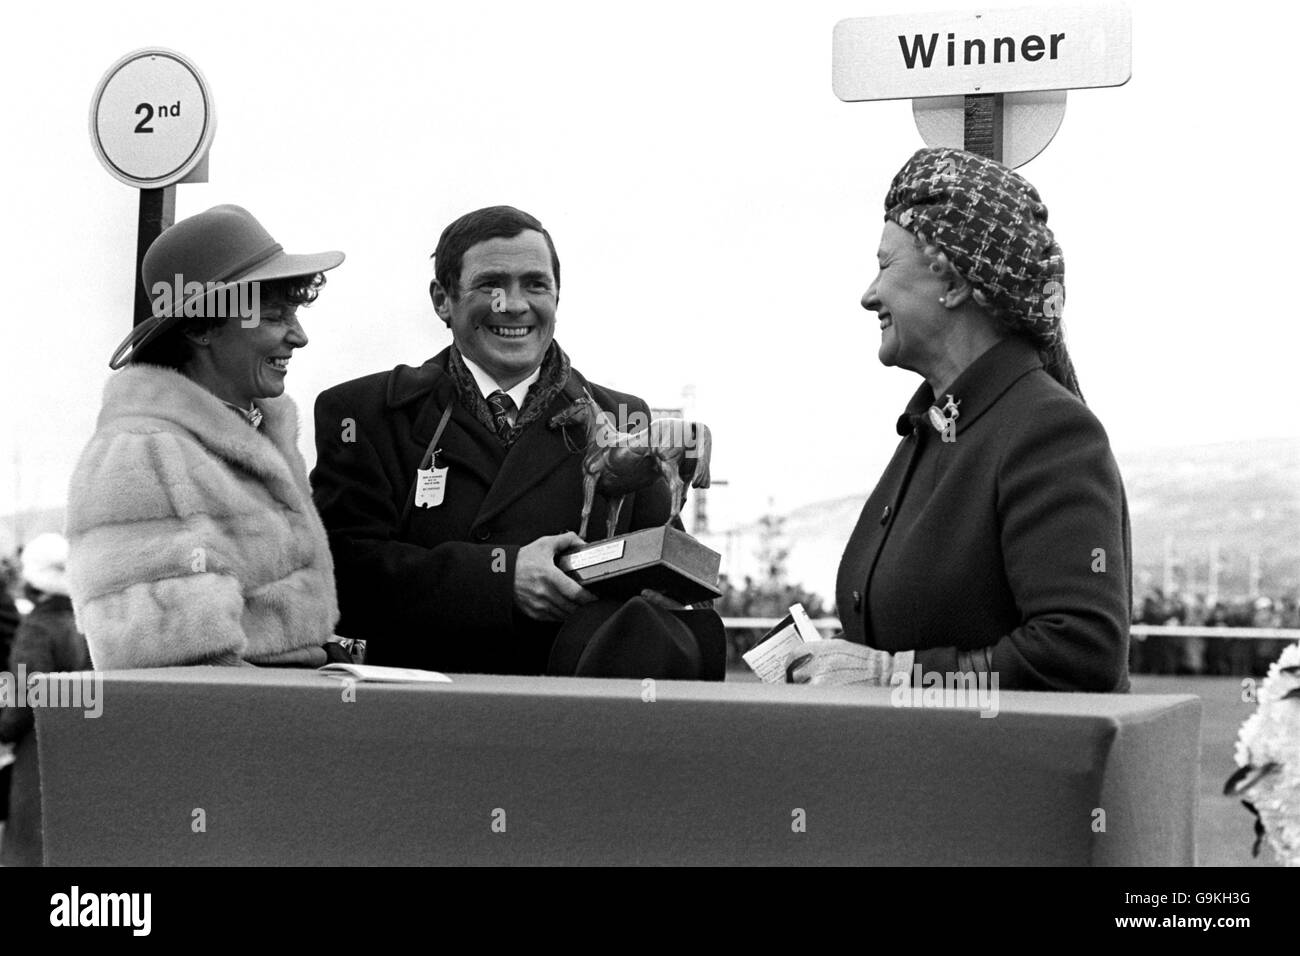 Besitzer T.J. Murray (c) und seine Frau (l) erhalten die Arkle Challenge Trophy von der Herzogin von Westminster (r), nachdem sein Pferd Brockshee das Rennen gewonnen hat Stockfoto